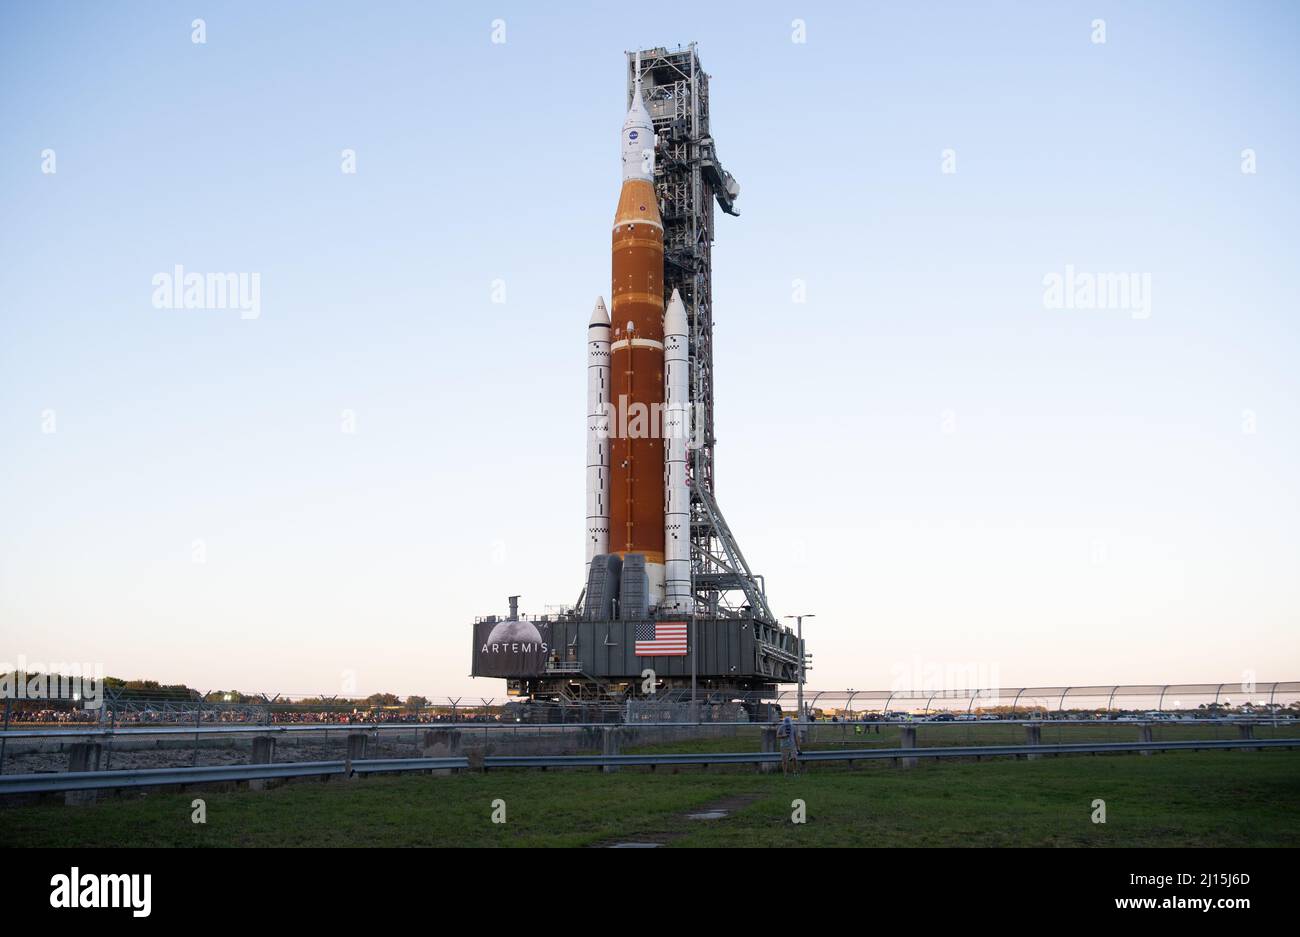 La fusée SLS (Space Launch System) de la NASA à bord de l'engin spatial Orion est vue au sommet d'un lanceur mobile alors qu'elle sort de High Bay 3 du bâtiment d'assemblage de véhicules pour la première fois pour lancer le complexe 39B, le jeudi 17 mars 2022, au Kennedy Space Center de la NASA en Floride. Avant l'essai en vol Artemis I de la NASA, la fusée SLS et l'engin spatial Orion entièrement empilés et intégrés feront l'objet d'une répétition en robe humide au Launch Complex 39B pour vérifier les systèmes et pratiquer les procédures de compte à rebours pour le premier lancement. Crédit photo : (NASA/Joel Kowsky) Banque D'Images